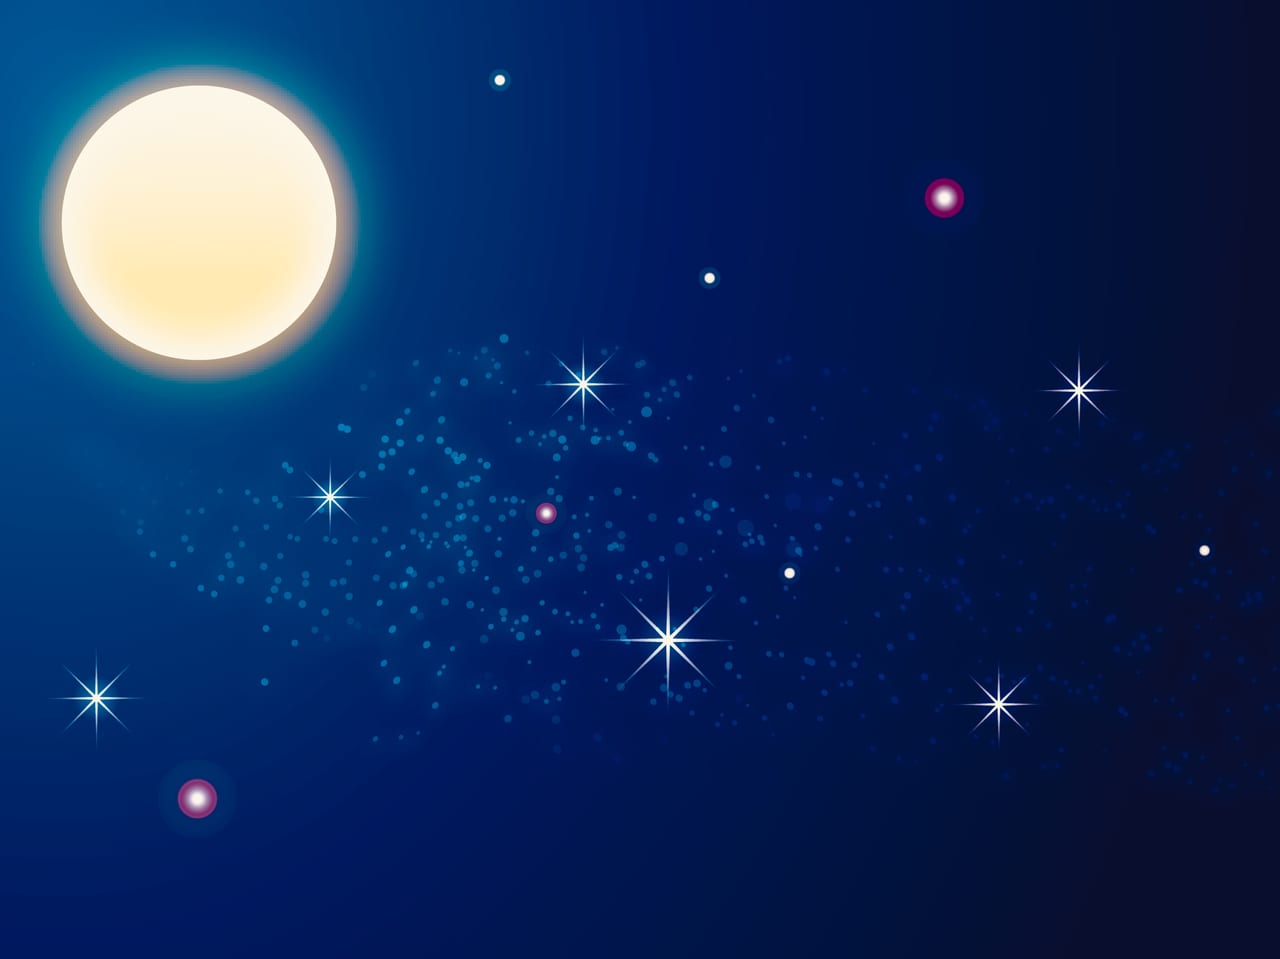 朝霞市 話題の夜空ヨガ開催 星空と月を見上げながら心も身体も